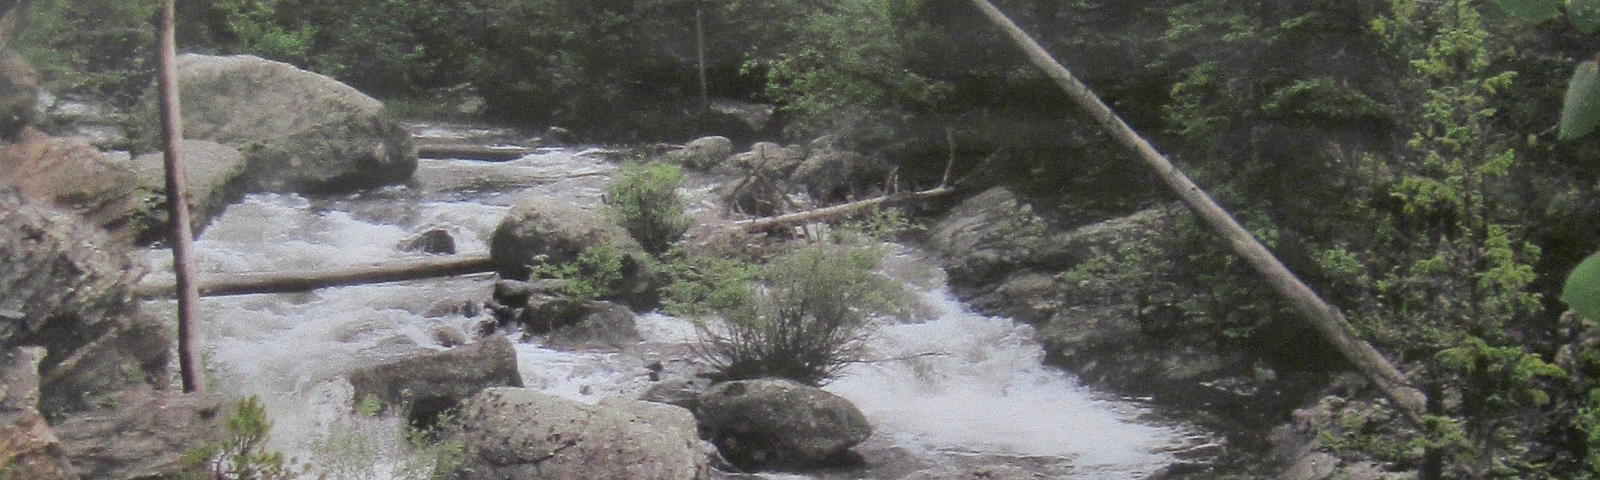 Photo of rushing mountain stream.